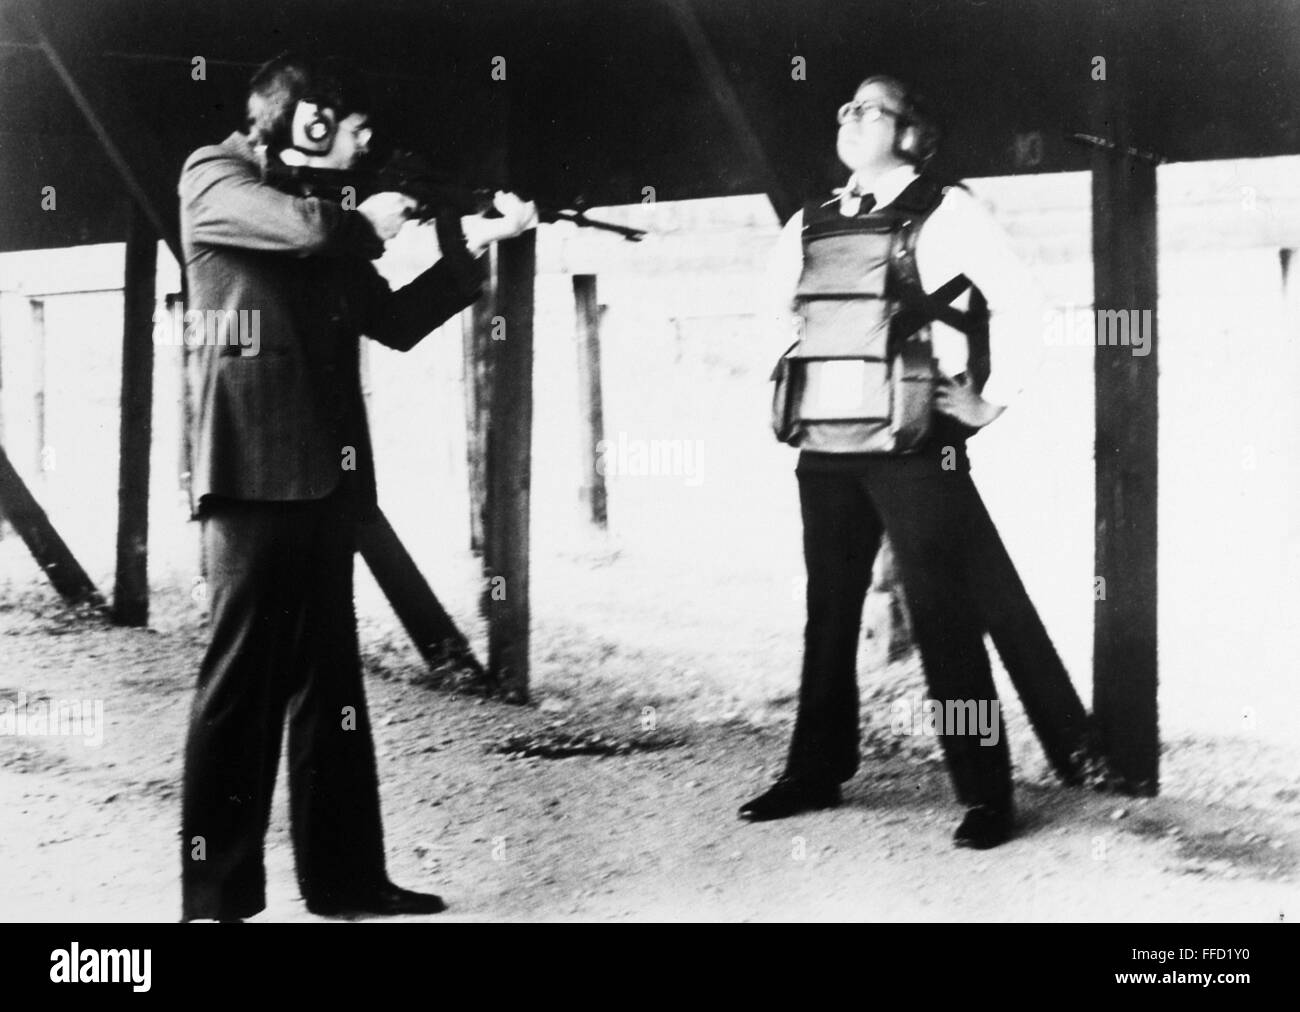 AMERICAN BODY ARMOR, 1970ER JAHRE. NUM freiwillige Feuer Rüstung piercing Munition in eine Hardcorps Weste, getragen vom Erfinder, Richard Davis, der 1970er Jahre. Stockfoto